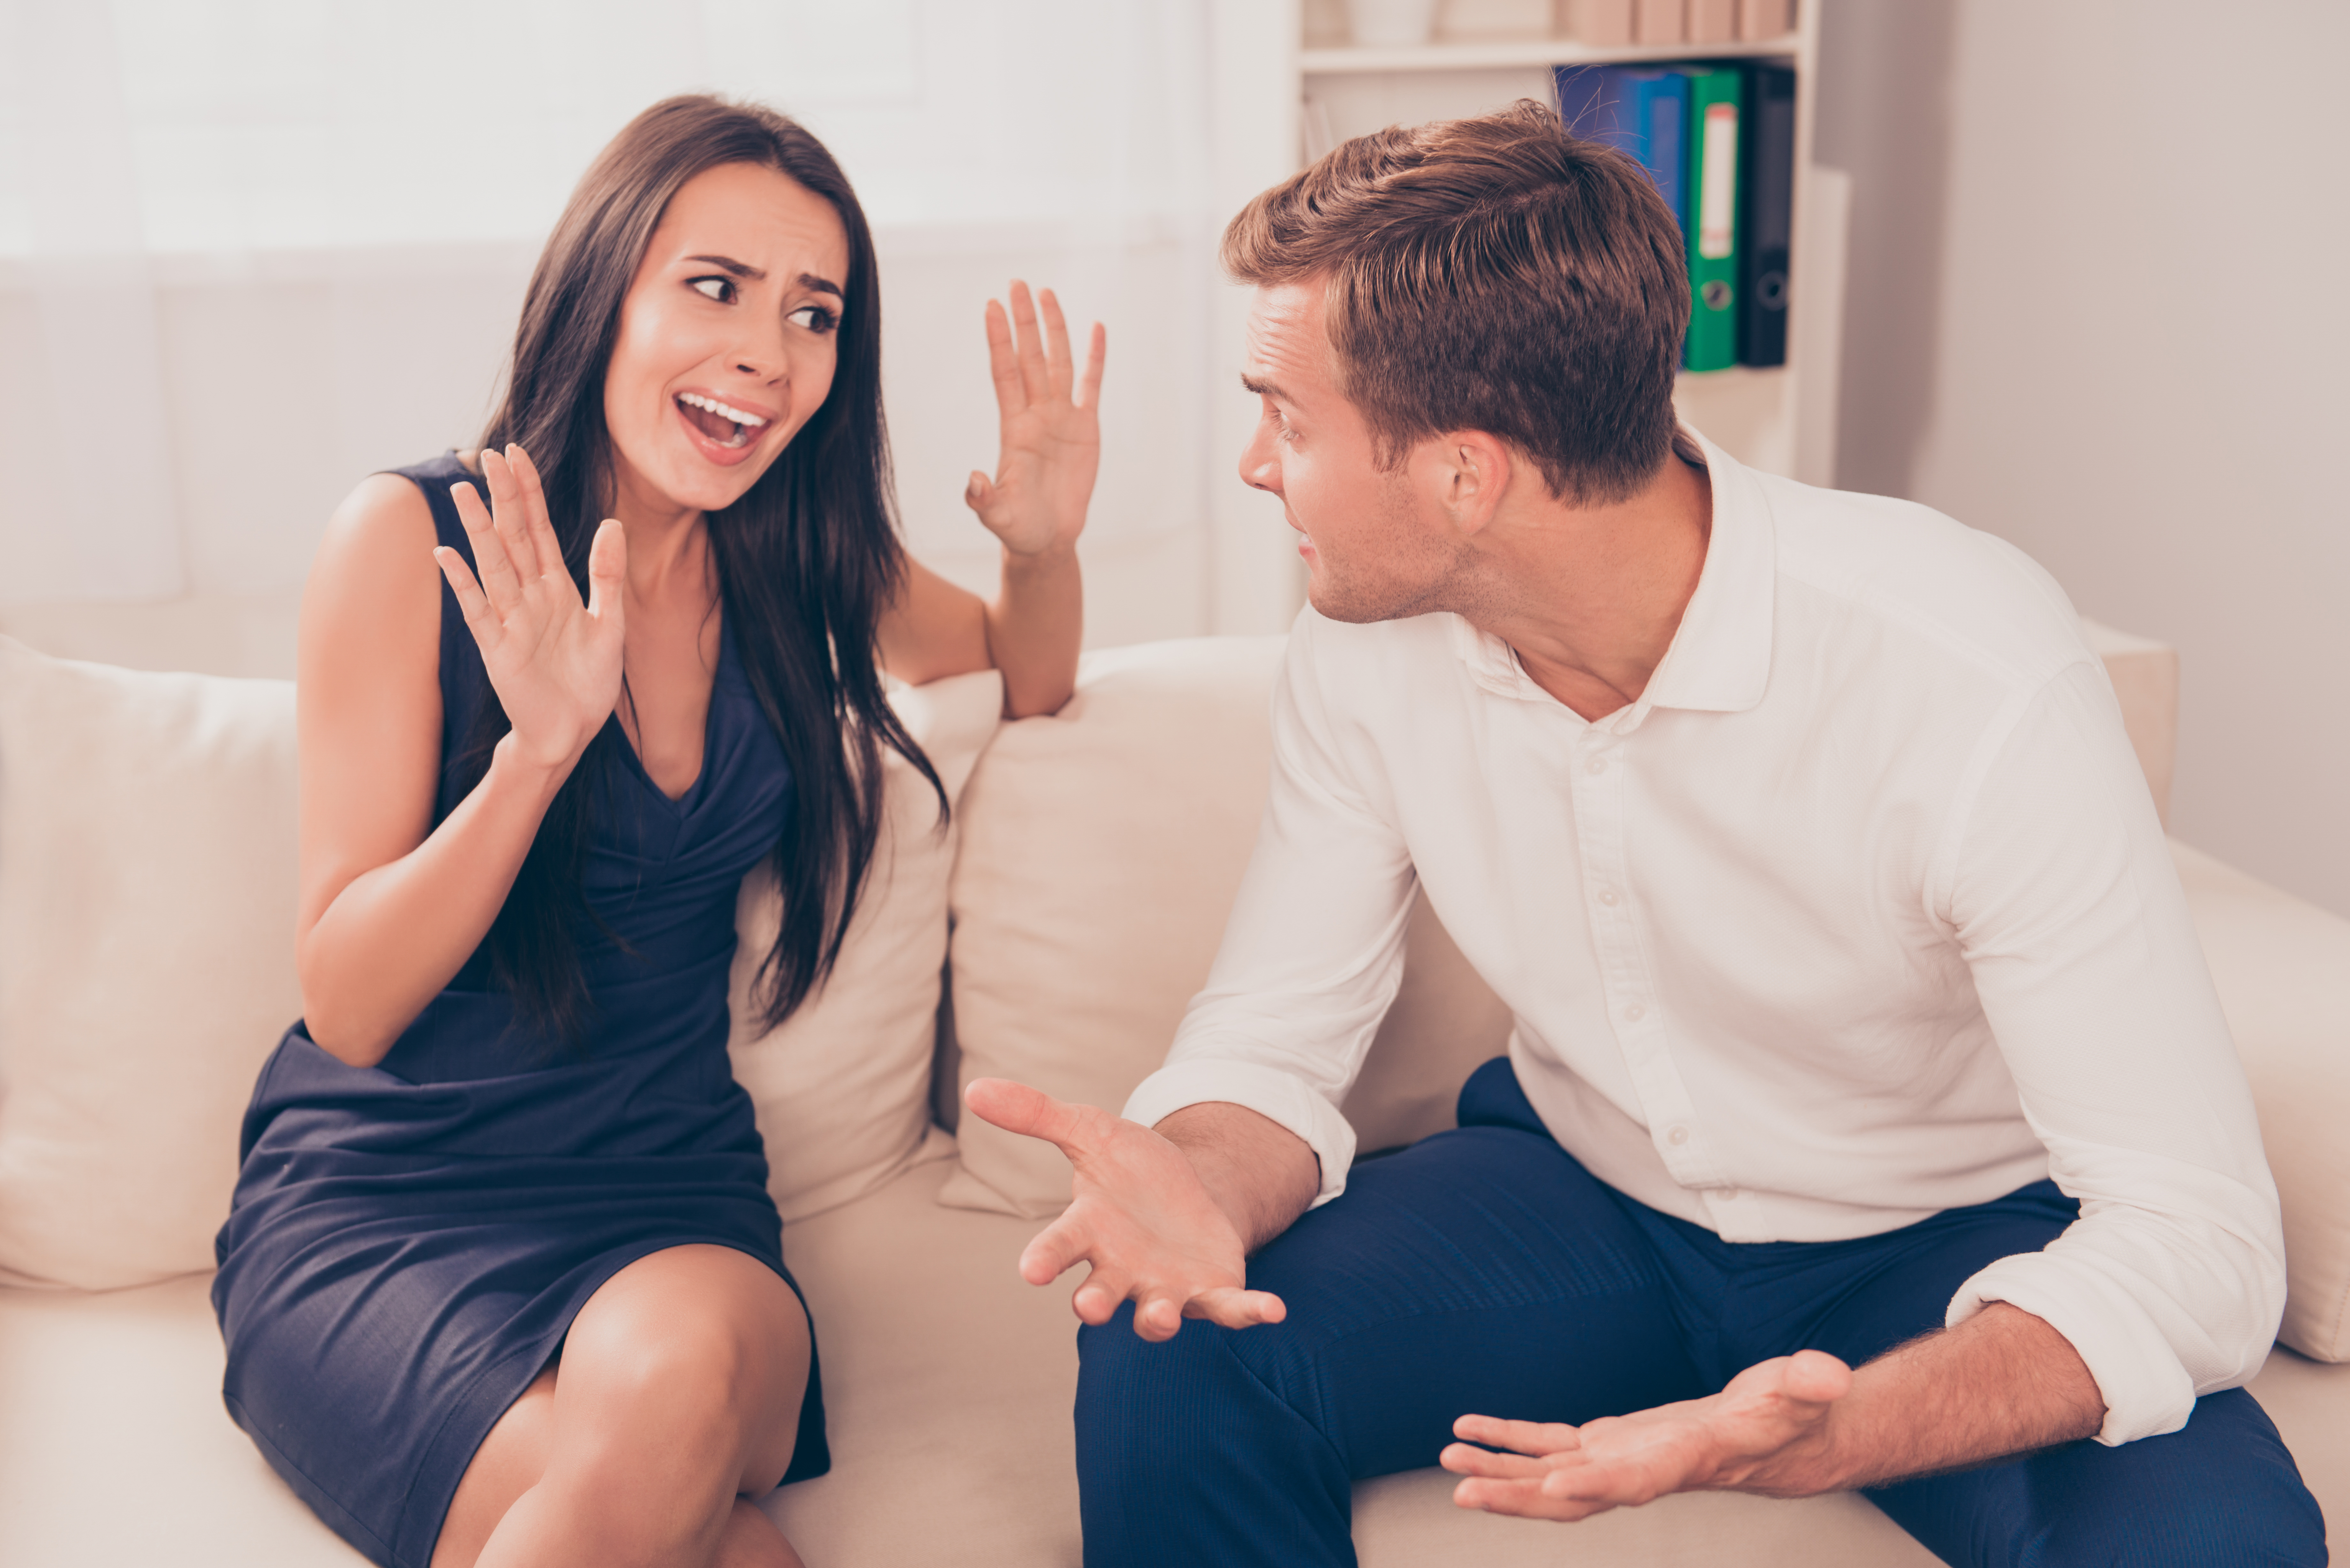 A couple having a heated disagreement | Source: Shutterstock